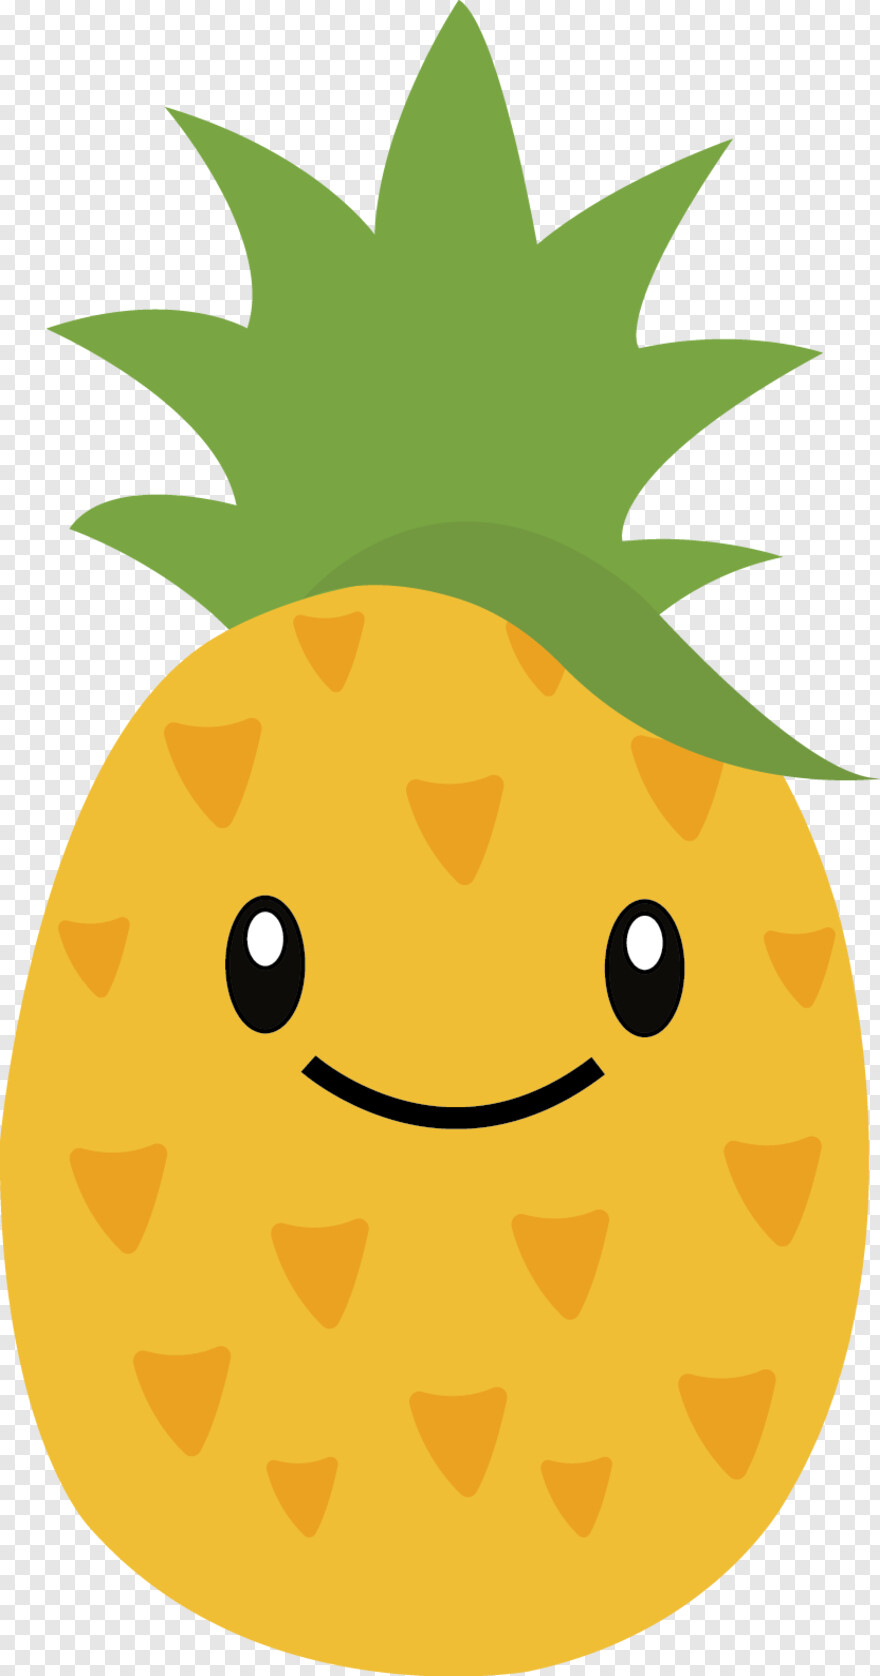 pineapple-juice # 850255